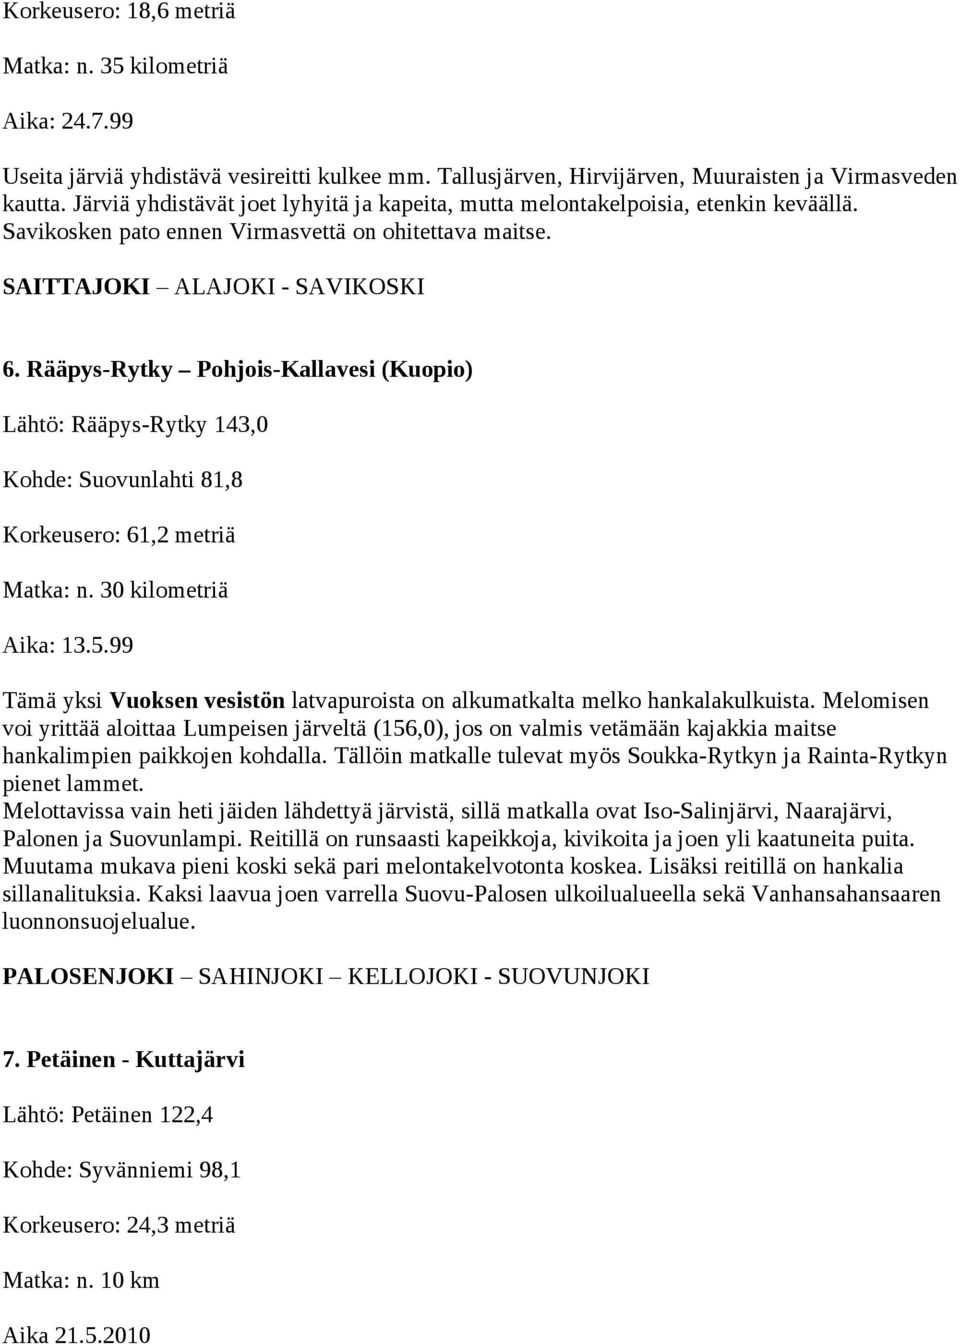 Rääpys-Rytky Pohjois-Kallavesi (Kuopio) Lähtö: Rääpys-Rytky 143,0 Kohde: Suovunlahti 81,8 Korkeusero: 61,2 metriä Matka: n. 30 kilometriä Aika: 13.5.